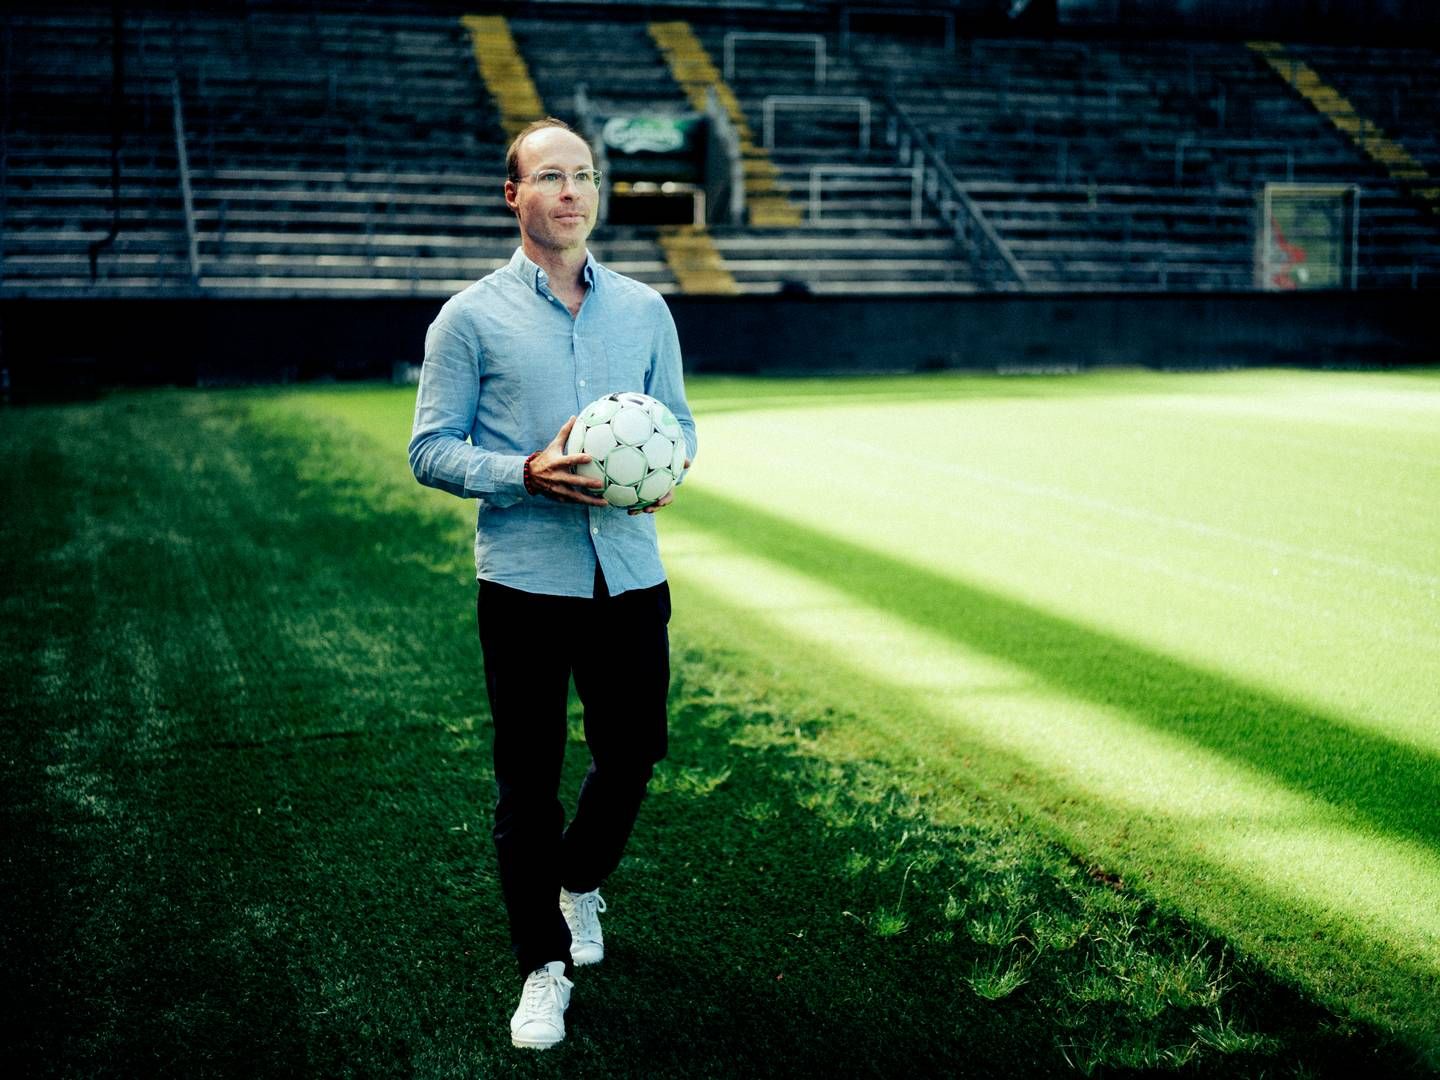 Michael Burk er adm. direktør i Unisport, der har været med en faktor for væksten blandt de danske sportskæder. Han forventer et positivt 2022 bl.a. pga. VM i fodbold i Qatar senere på året.. | Foto: Unisport/Pr